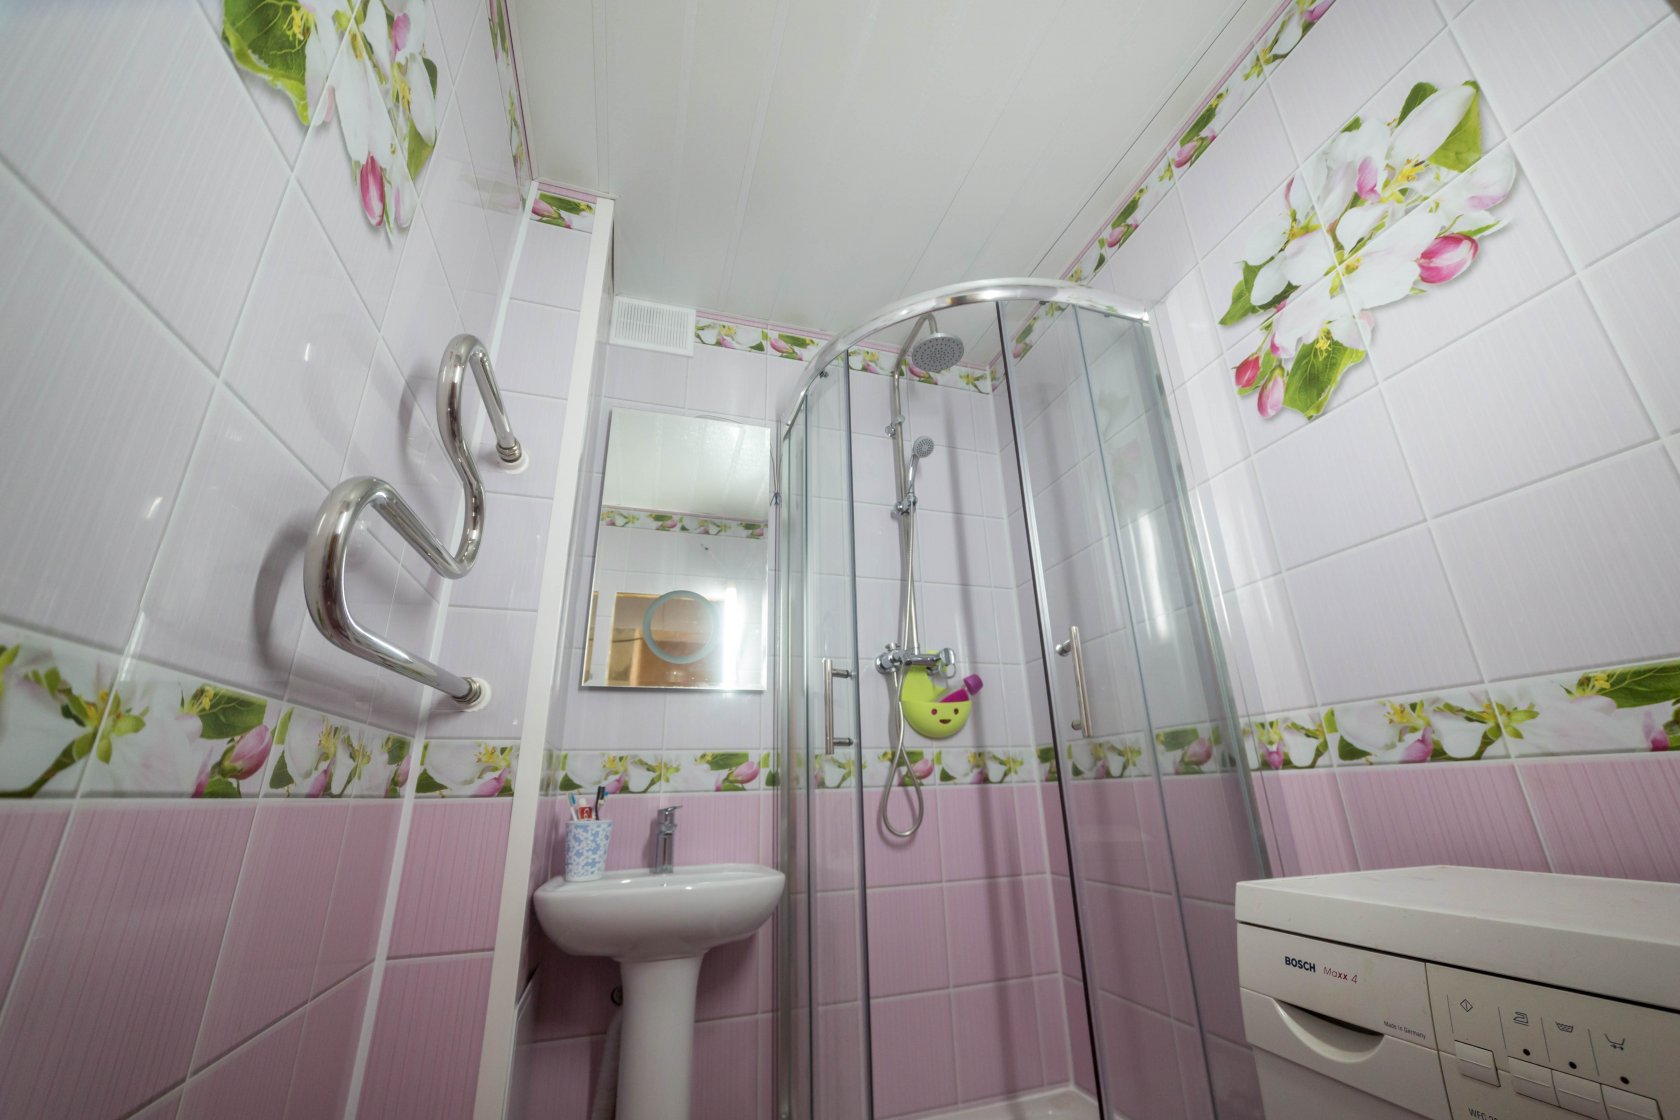 Фото ванной комнаты с панелями пвх фото дизайн